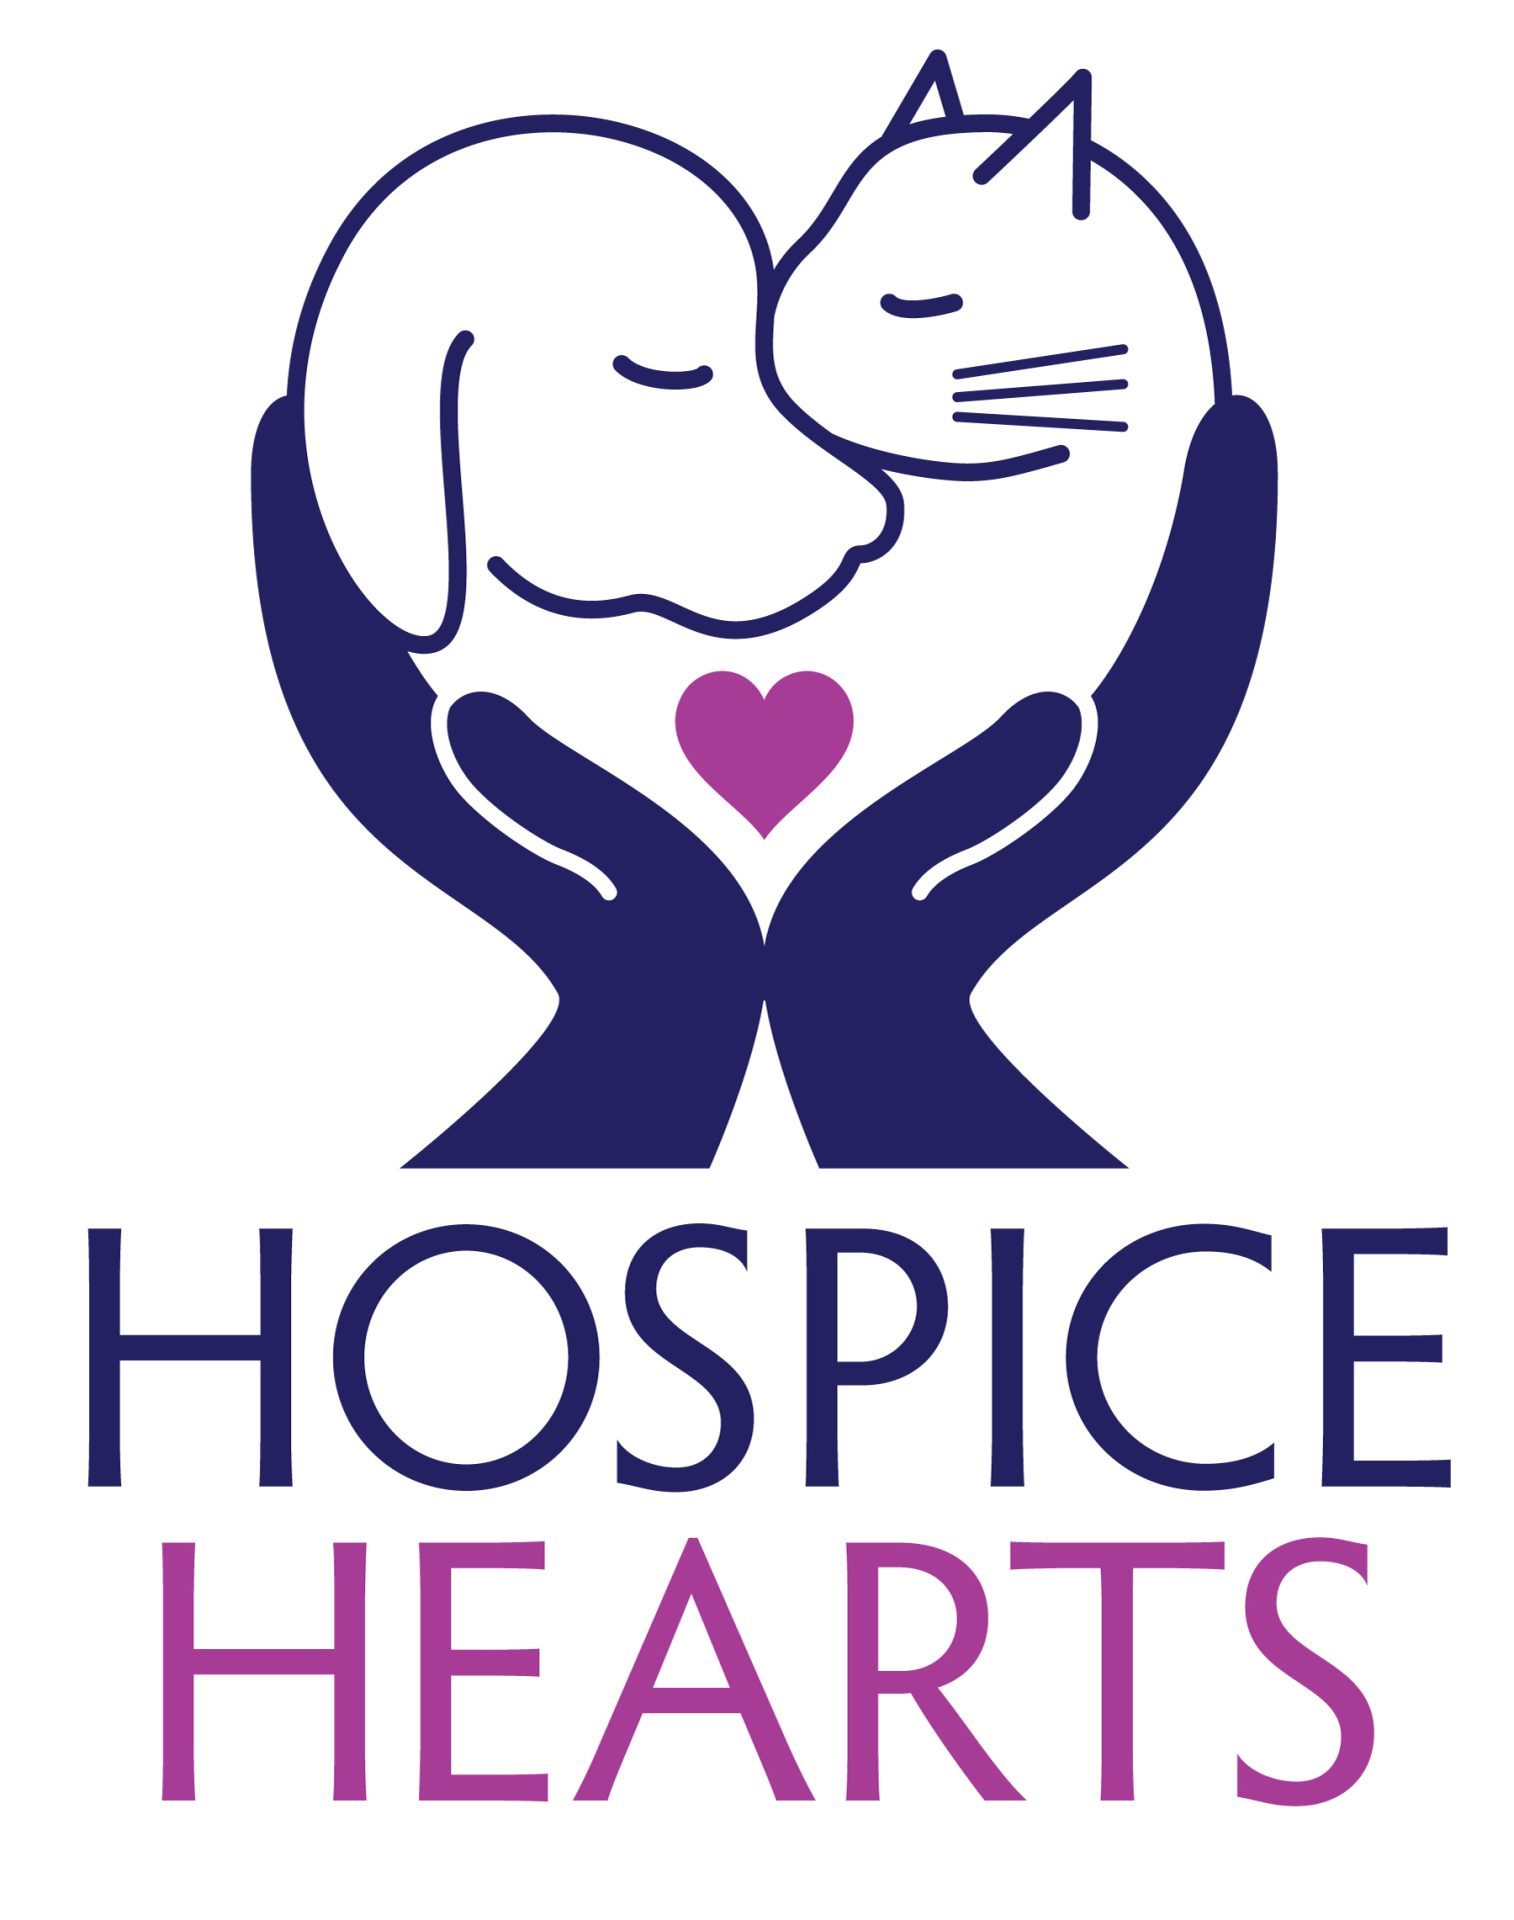 hospice logo ideas 1